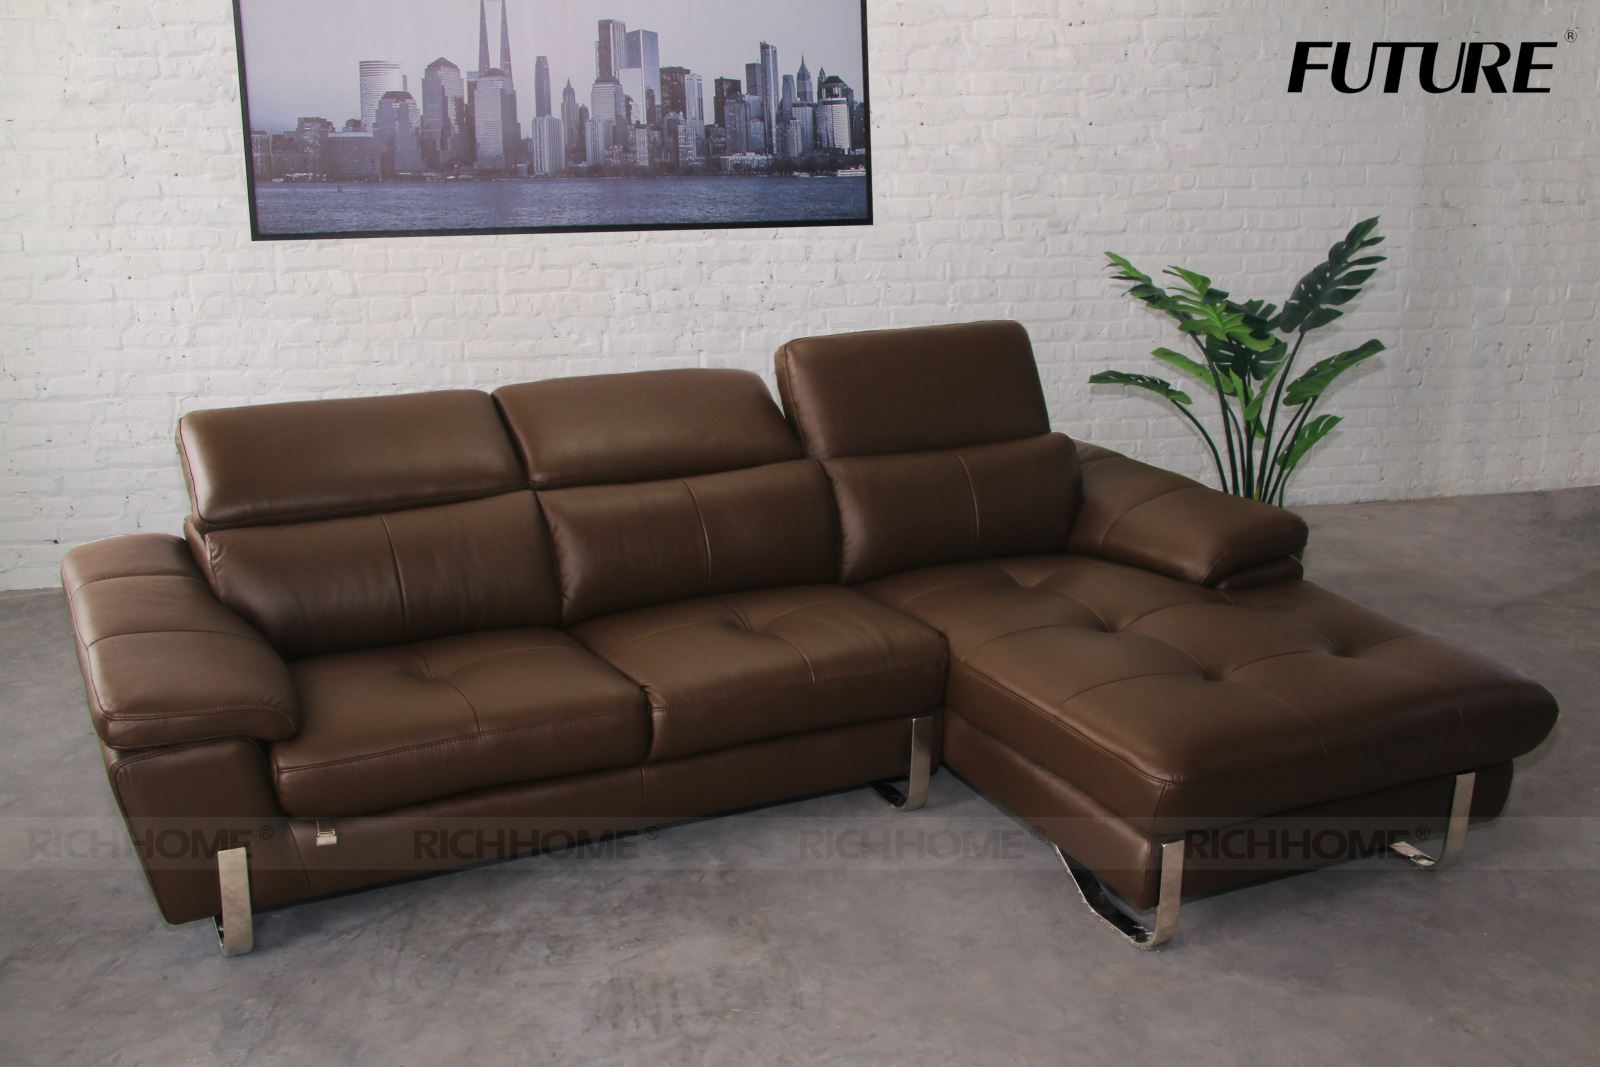 5 mẫu sofa góc nhỏ gọn cho phòng khách chung cư - Ảnh 4